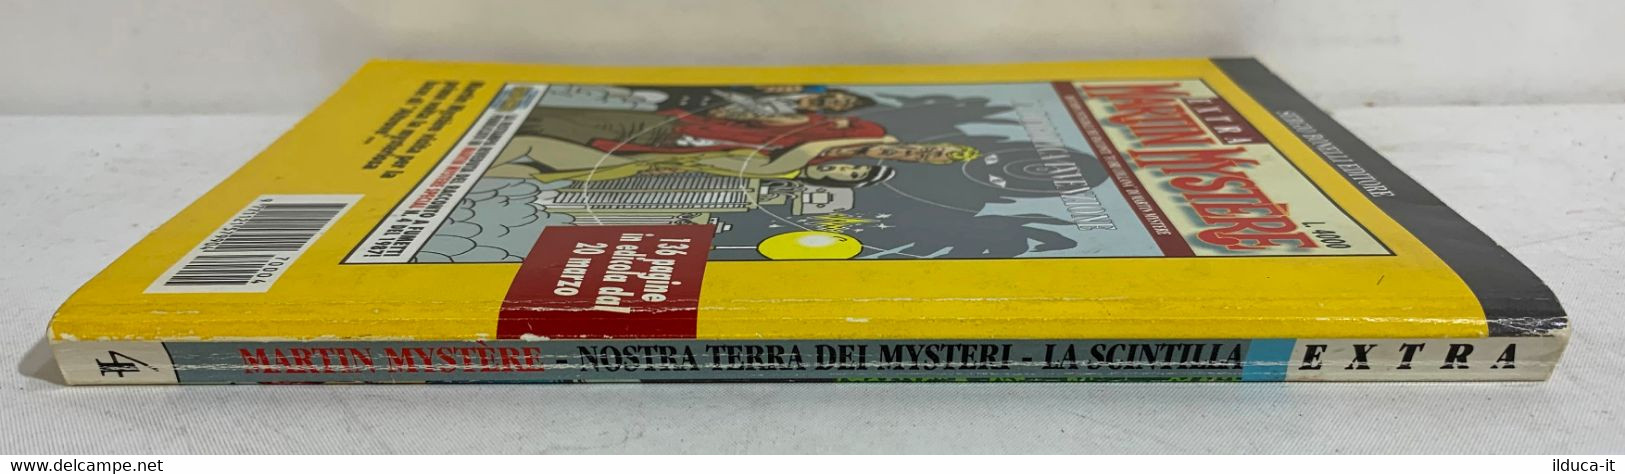 I100866 Extra Martin Mystere N. 4 - Nostra Terra Dei Mysteri / La Scintilla - Bonelli